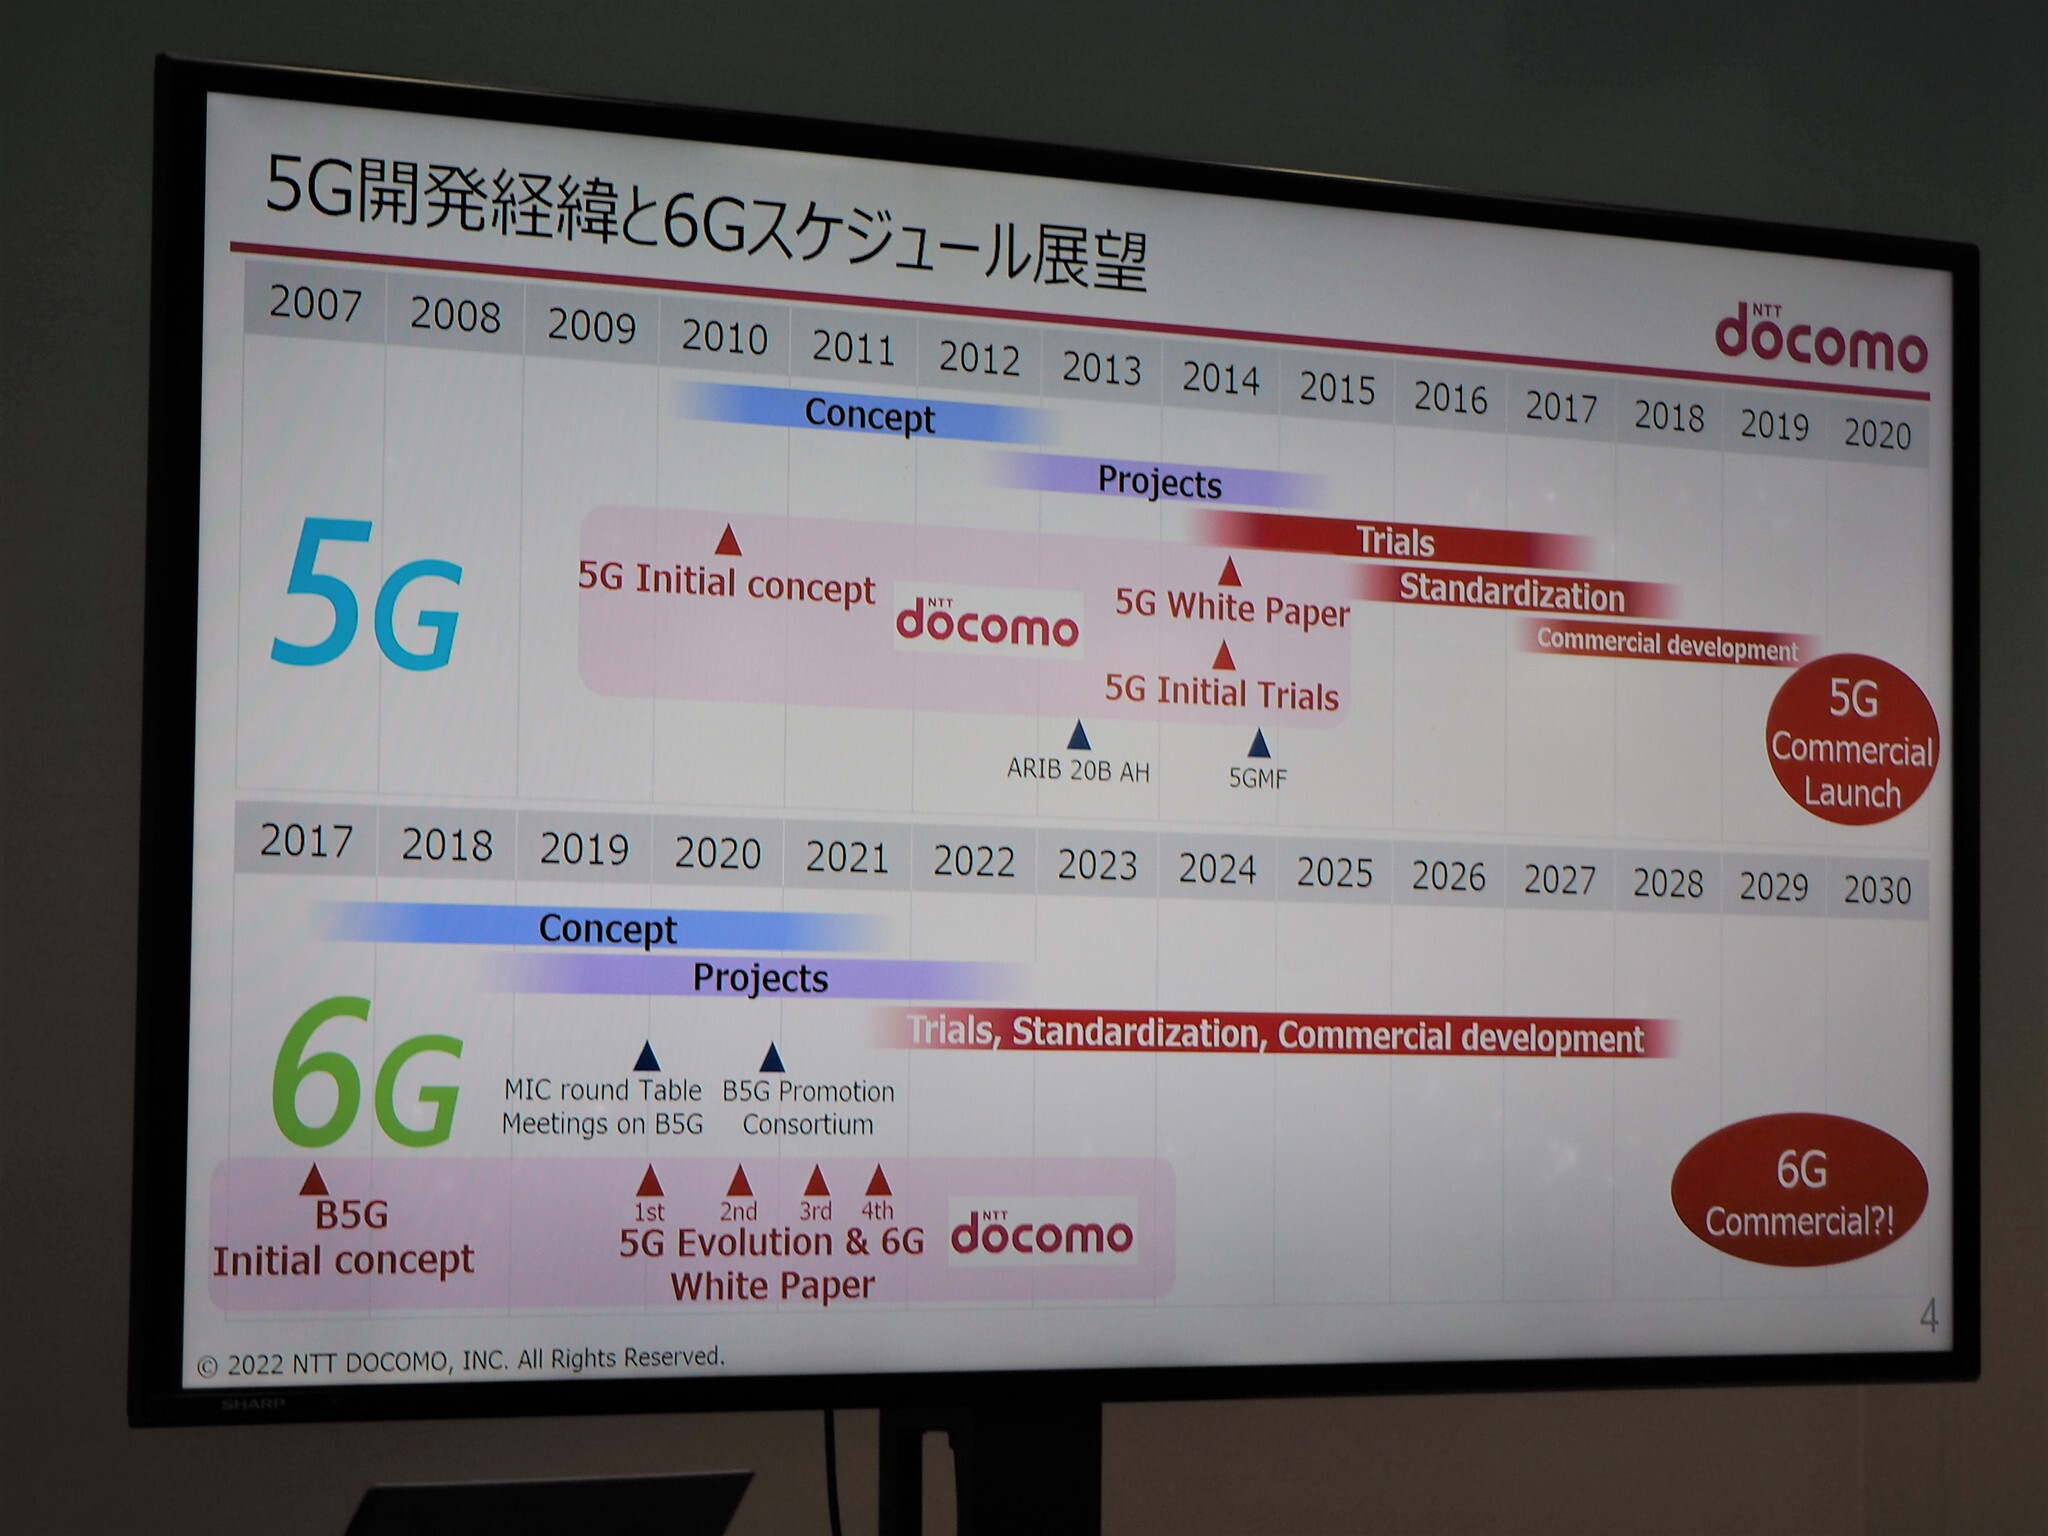 5Gの開発スケジュールと6Gの展望。6Gは5Gの商用サービス開始前から技術の検討や開発が進められており、5Gの3年前倒しで商用化が進むとの見方もなされている